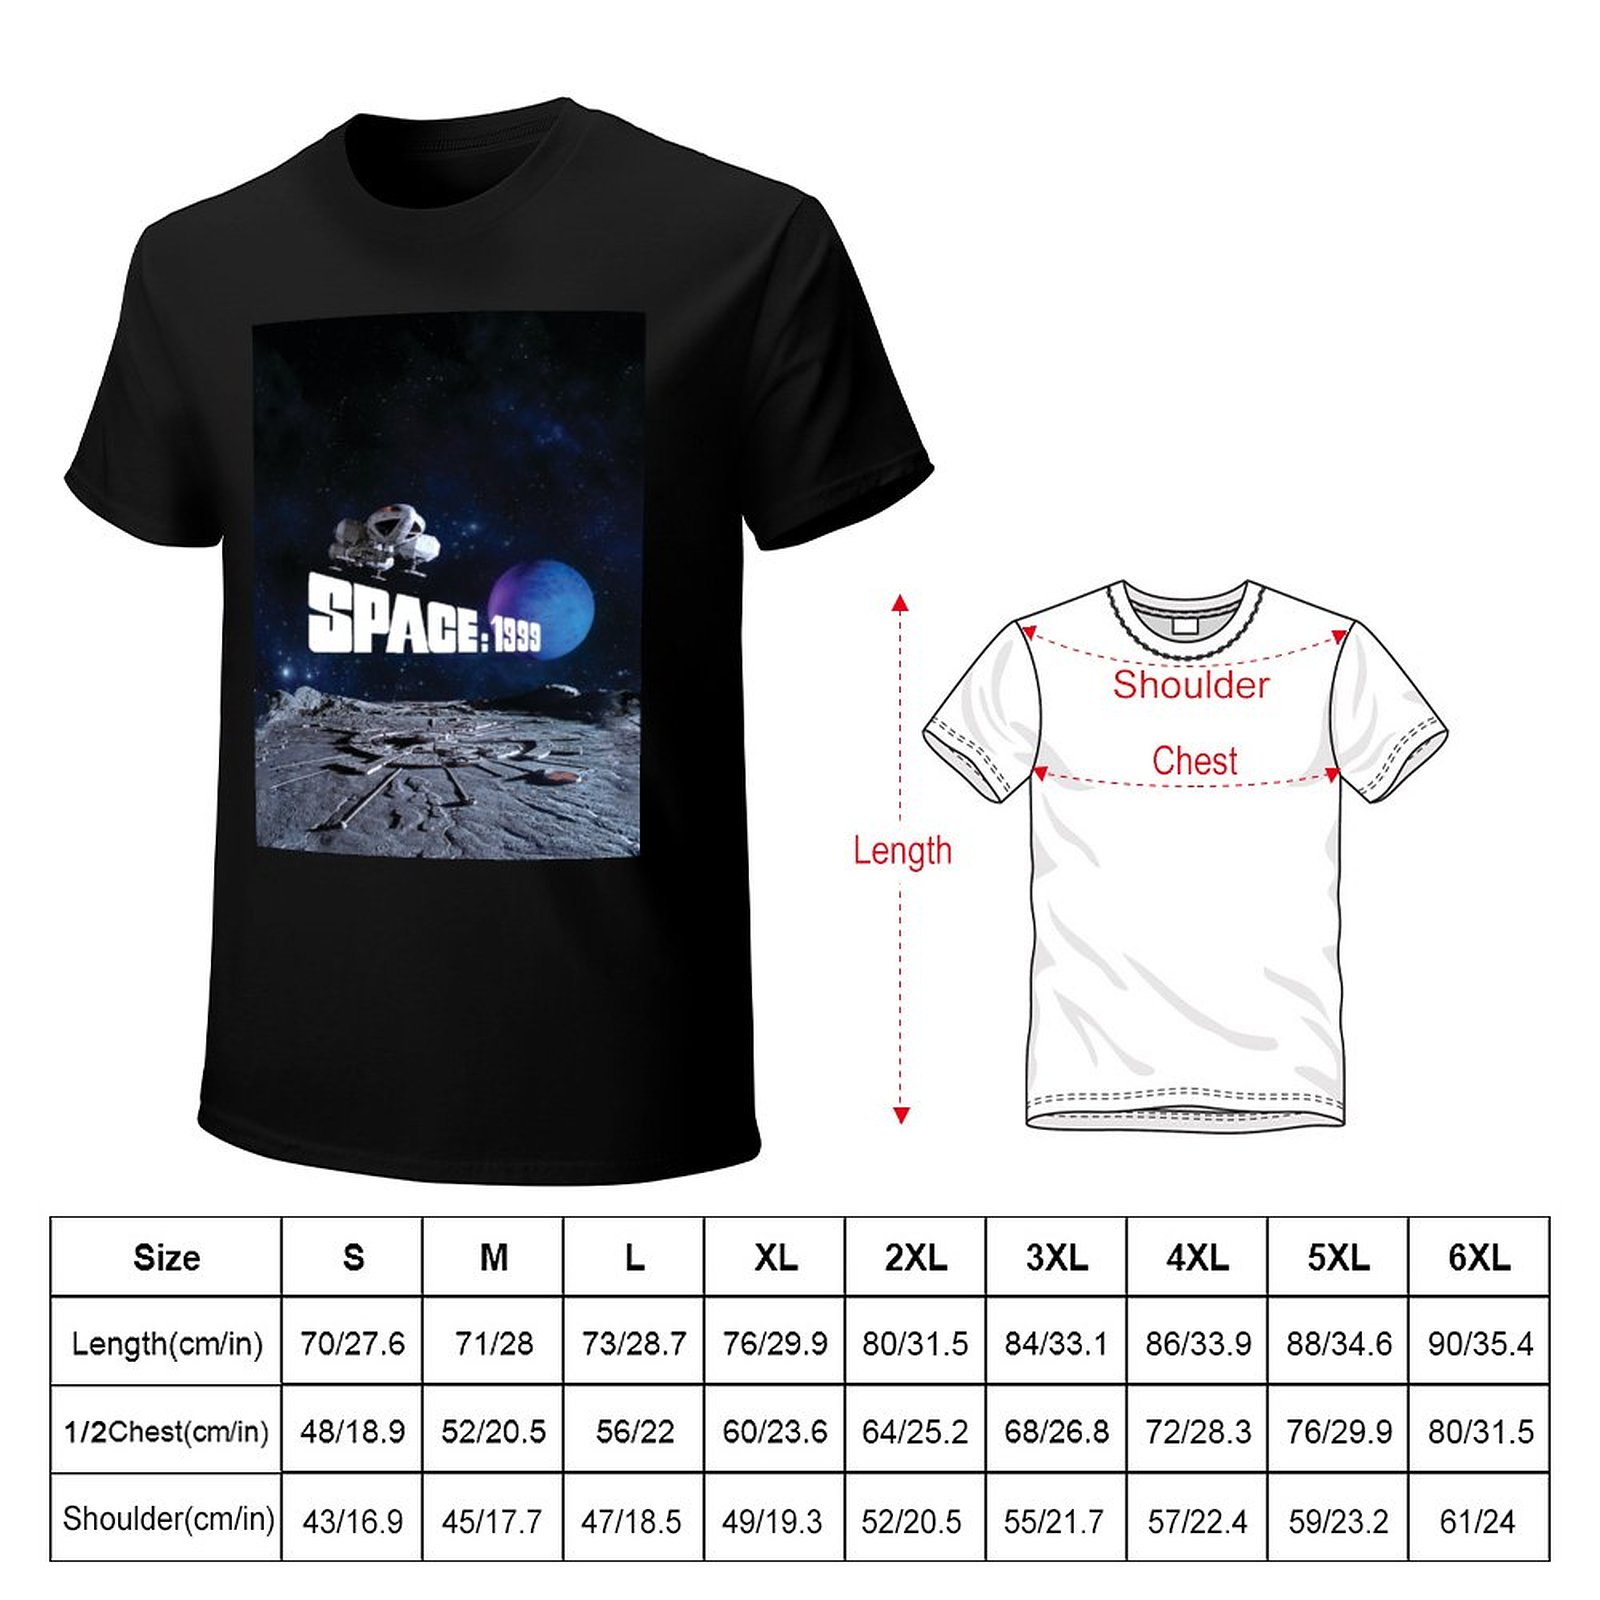 Eagle Over Alpha avec planète 1 T-shirt Vêtements d'été T-shirt drôle T-shirt T-shirts pour hommes